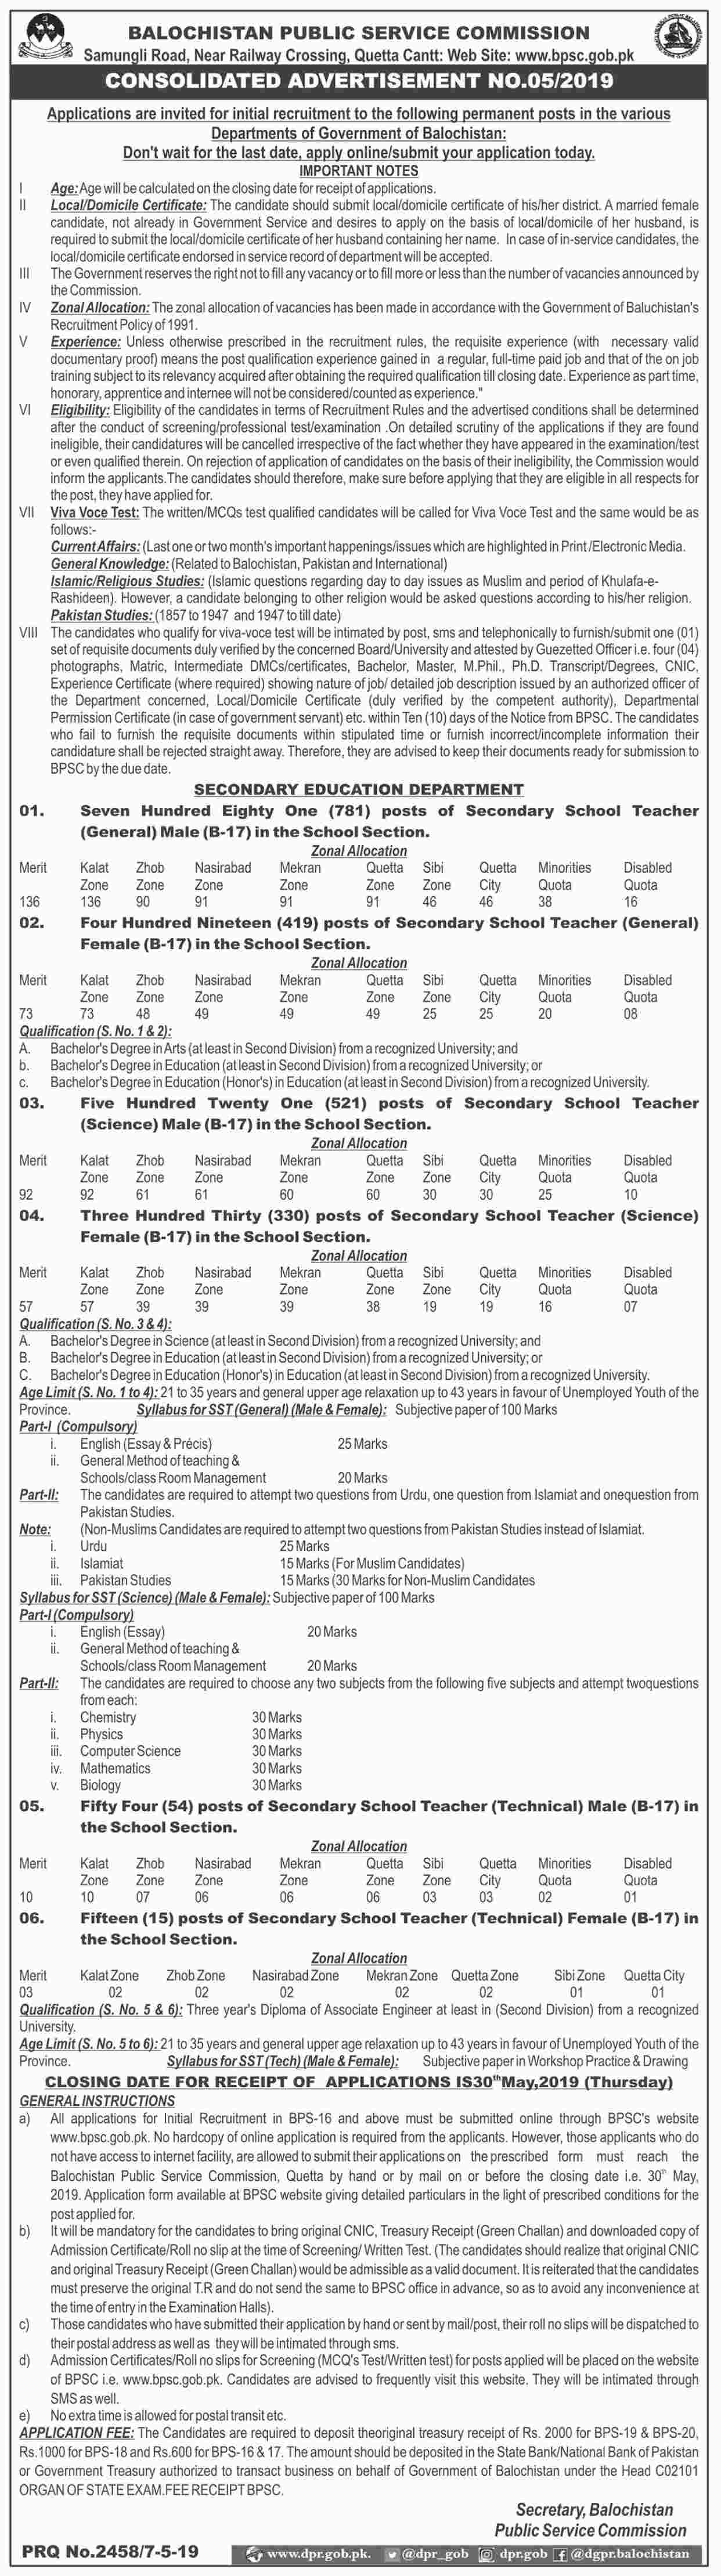 Balochistan Public Service Commission (BPSC) jobs 2019